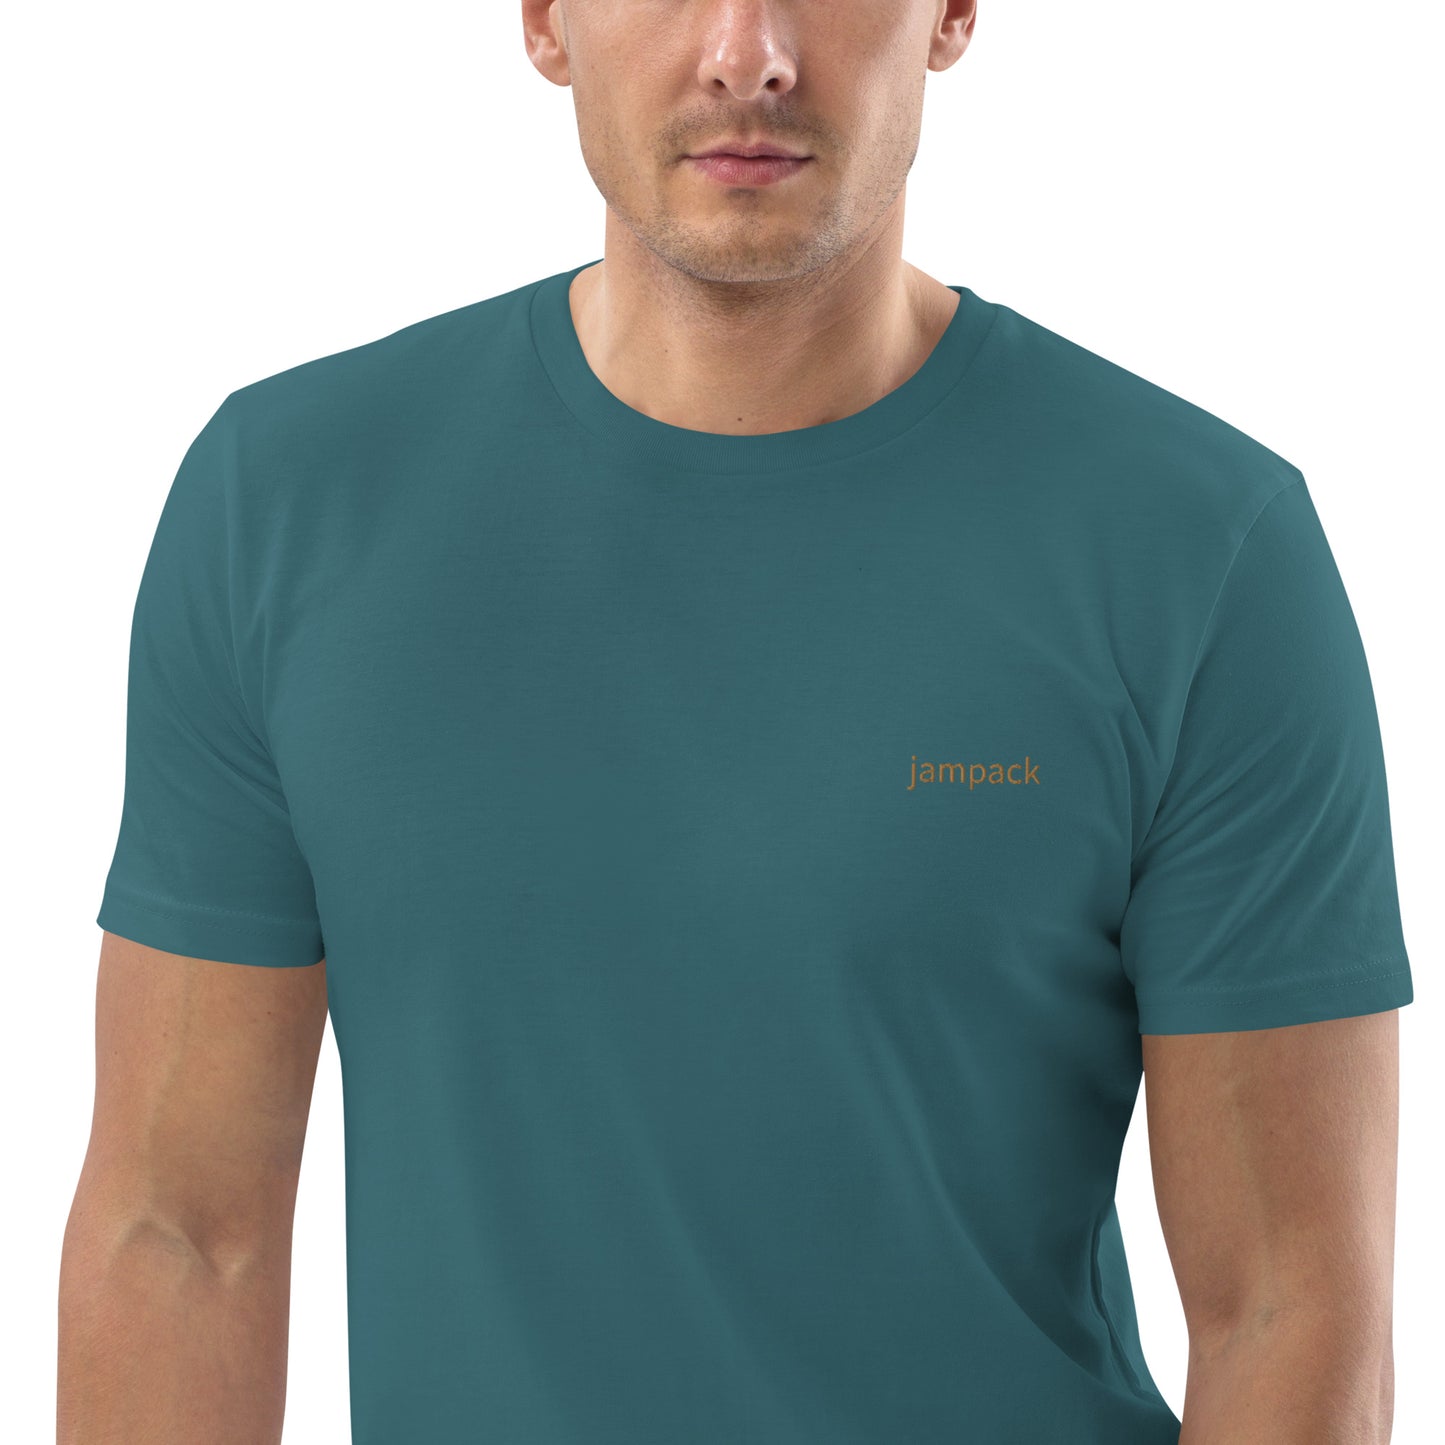 ユニセックス オーガニックコットン製Tシャツ